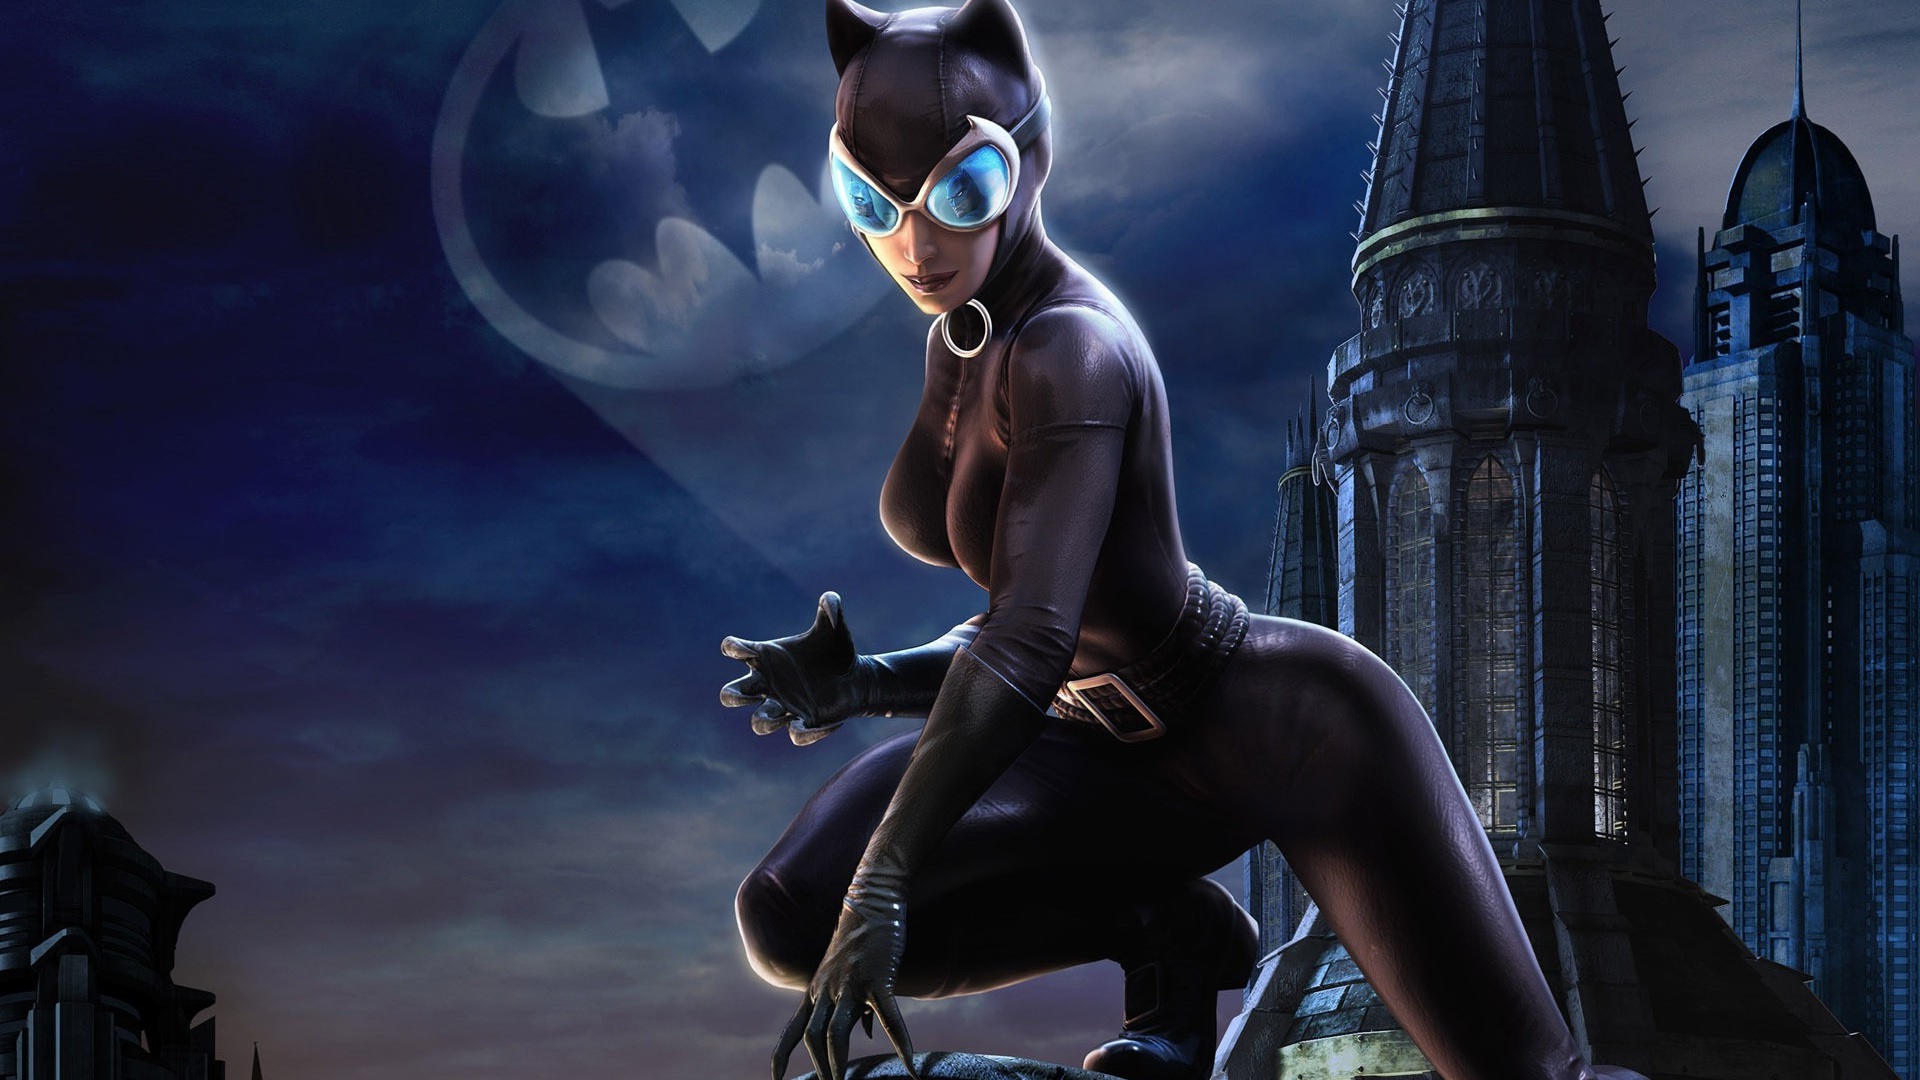 catwoman fond d'écran hd,personnage fictif,catwoman,oeuvre de cg,homme chauve souris,supervillain